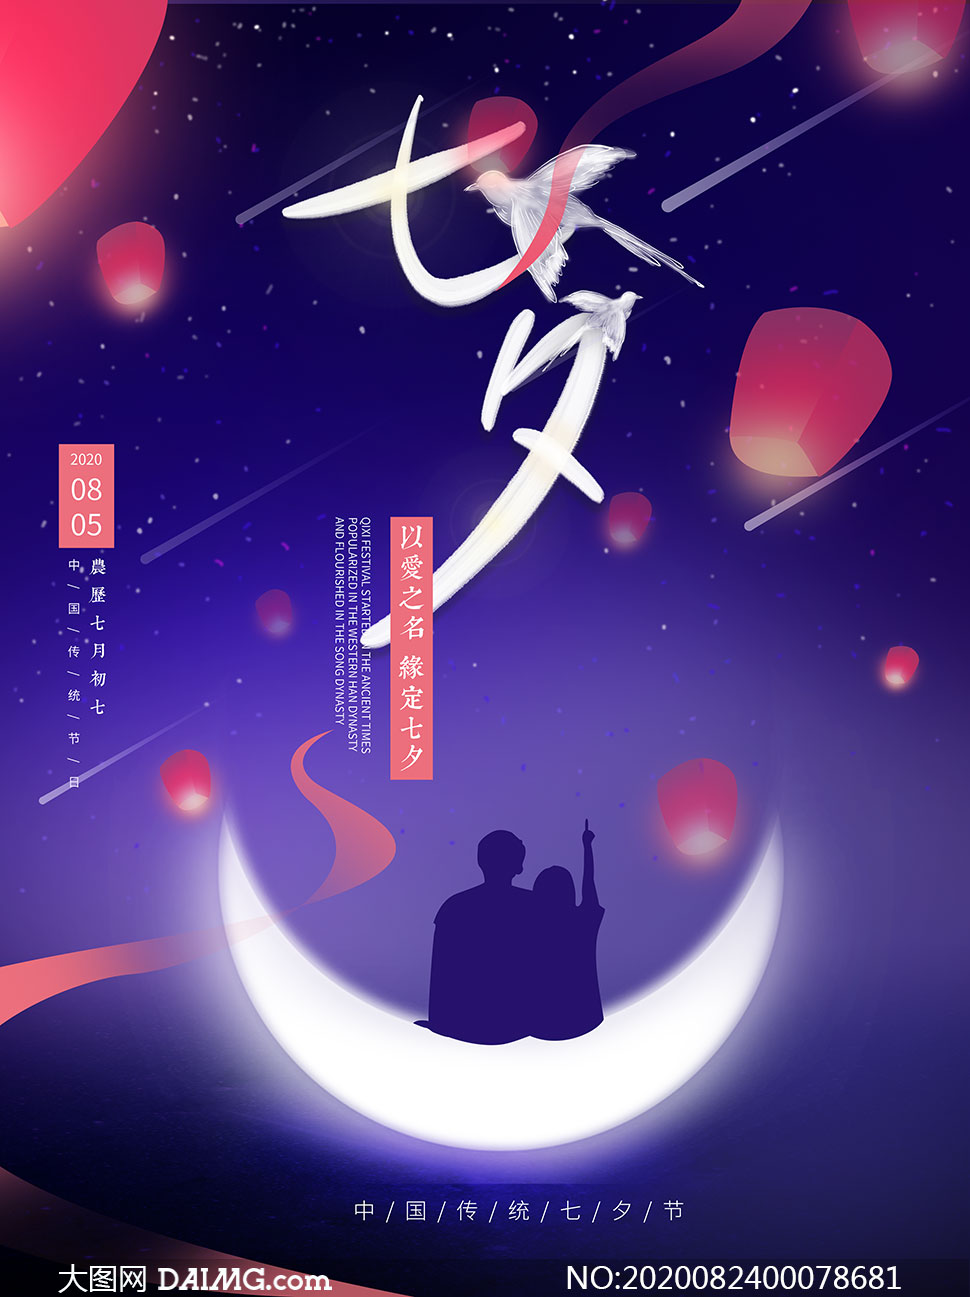 缘定七夕节主题活动海报设计psd素材 大图网图片素材